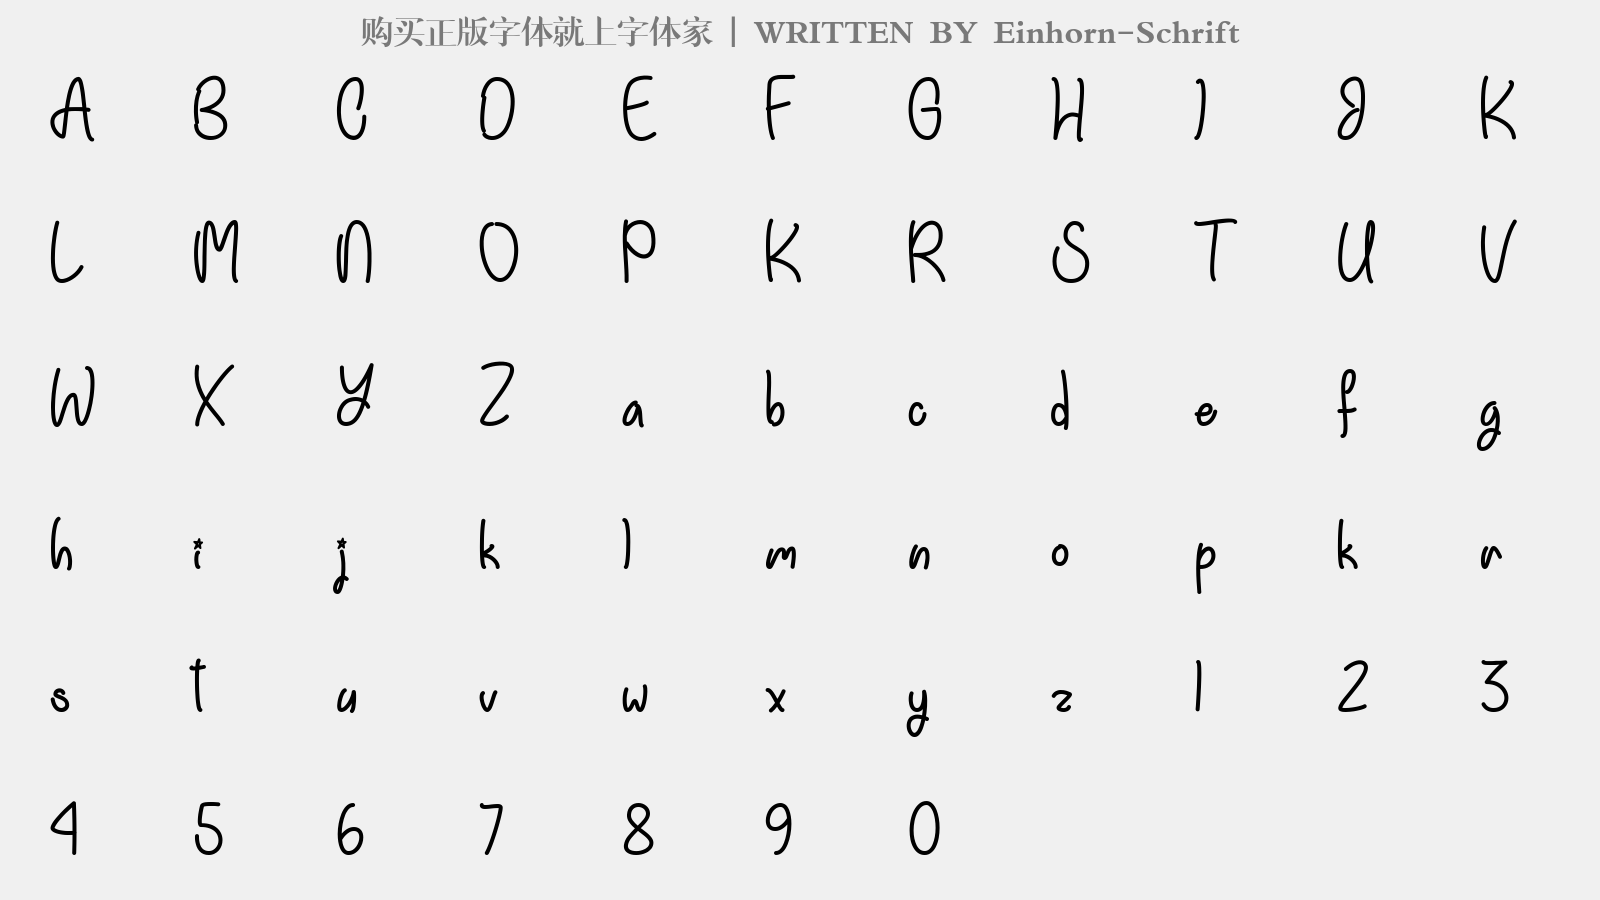 Einhorn-Schrift - 大写字母/小写字母/数字